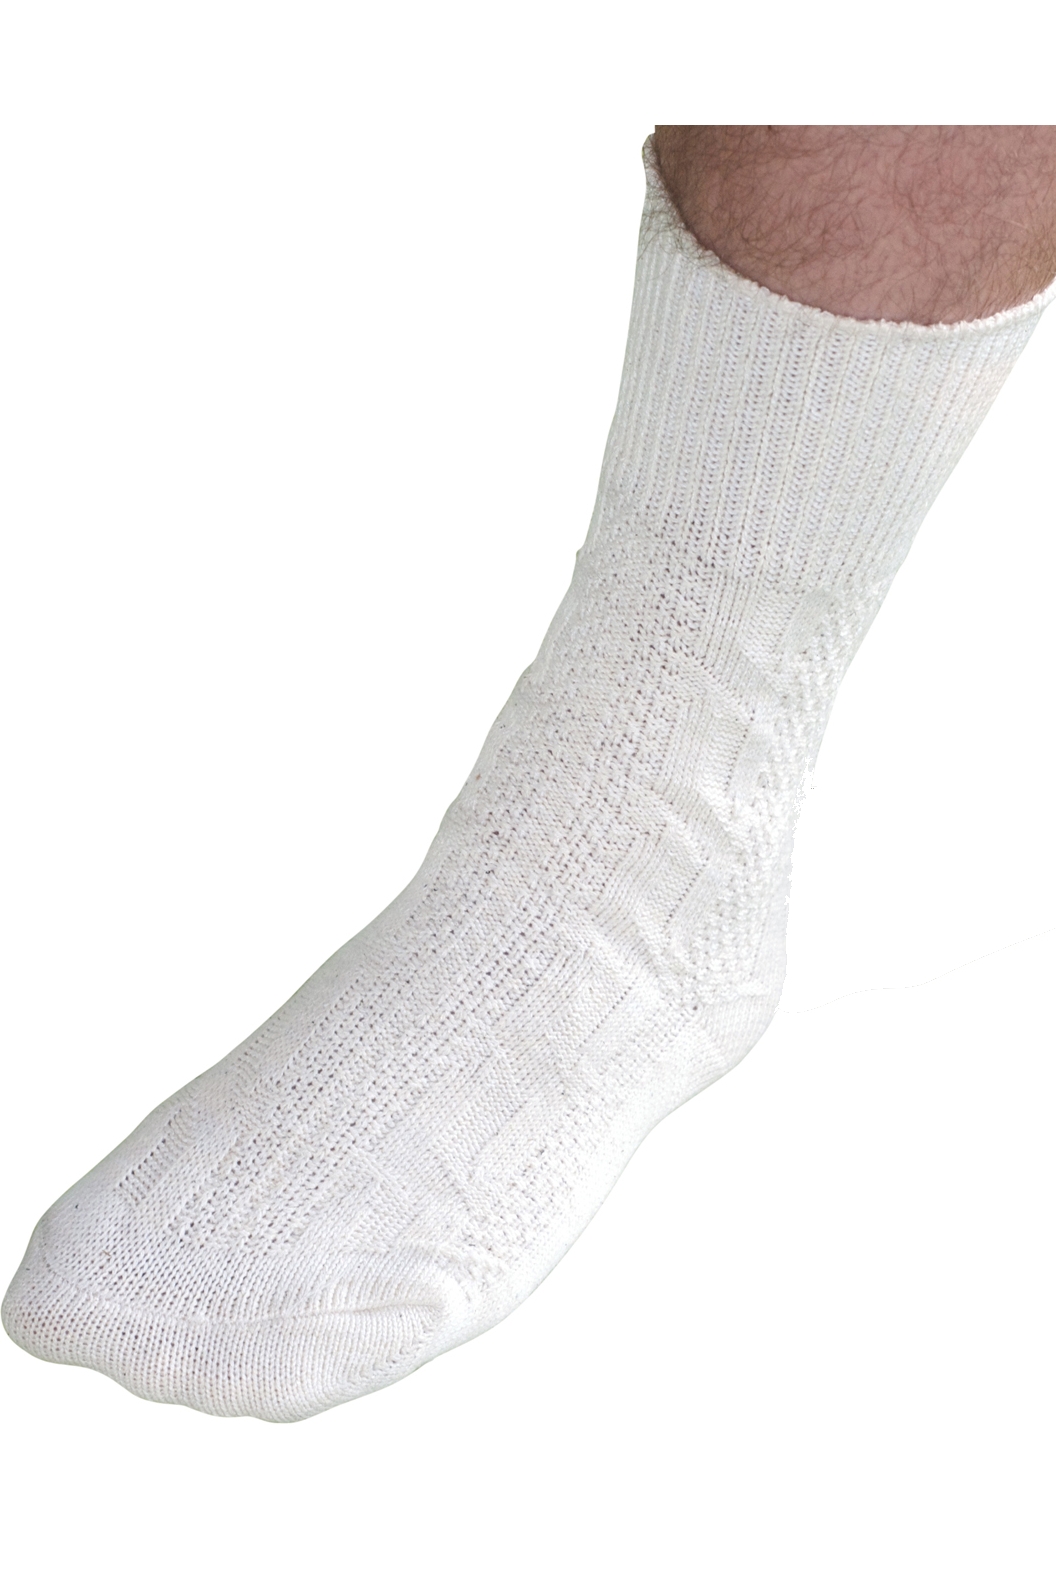 kurze Socken Trachtensocken Zopfmuster